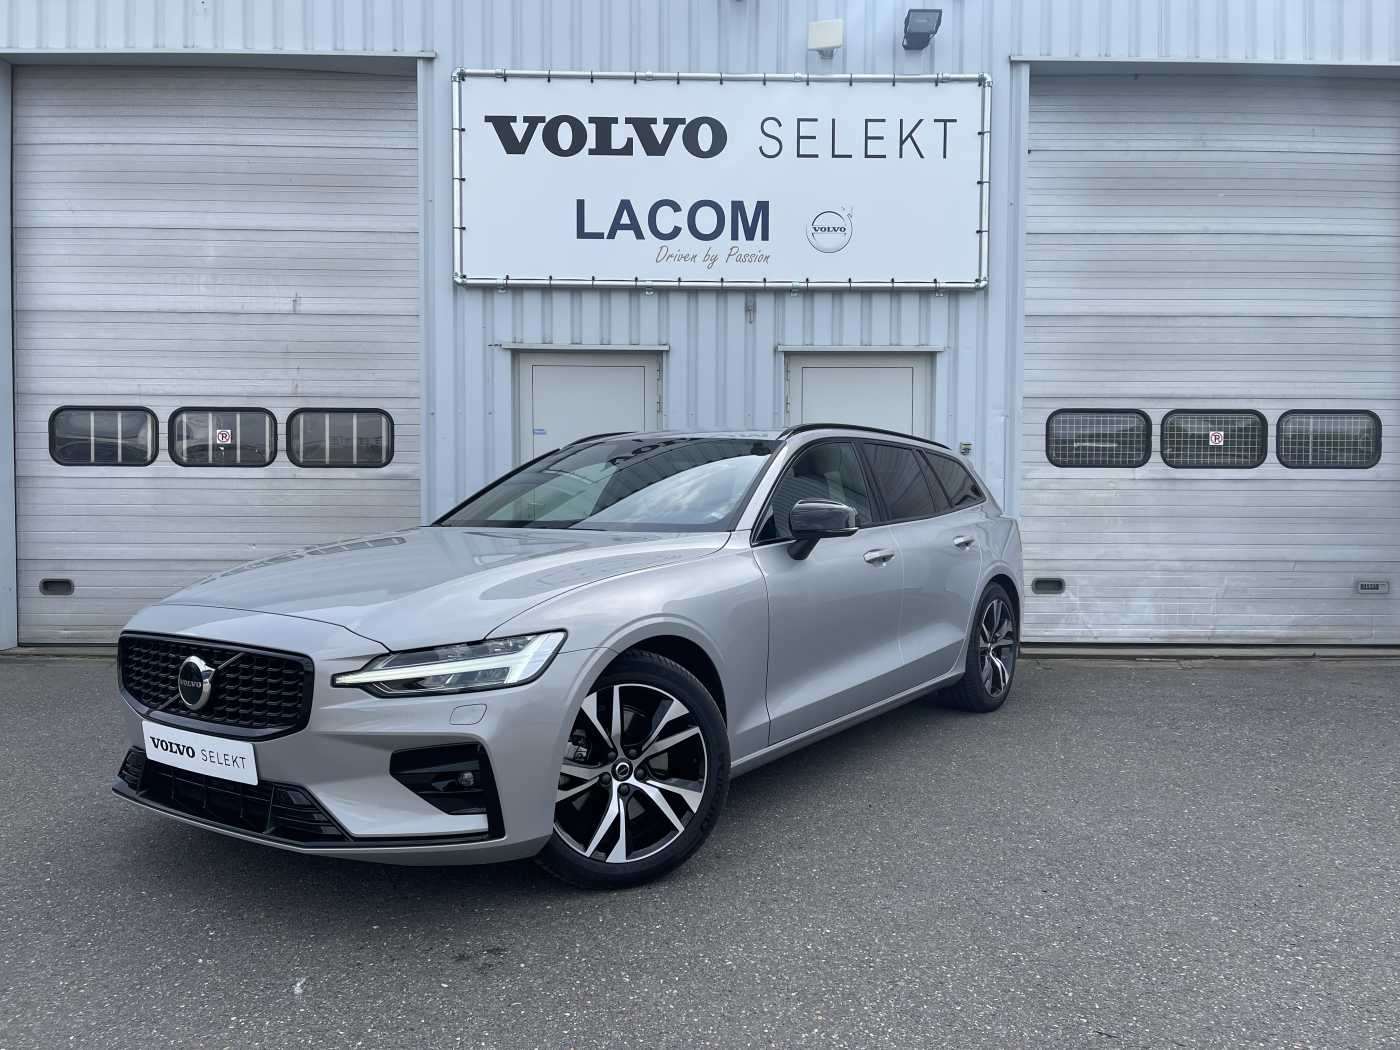 V60 - Volvo Lacom